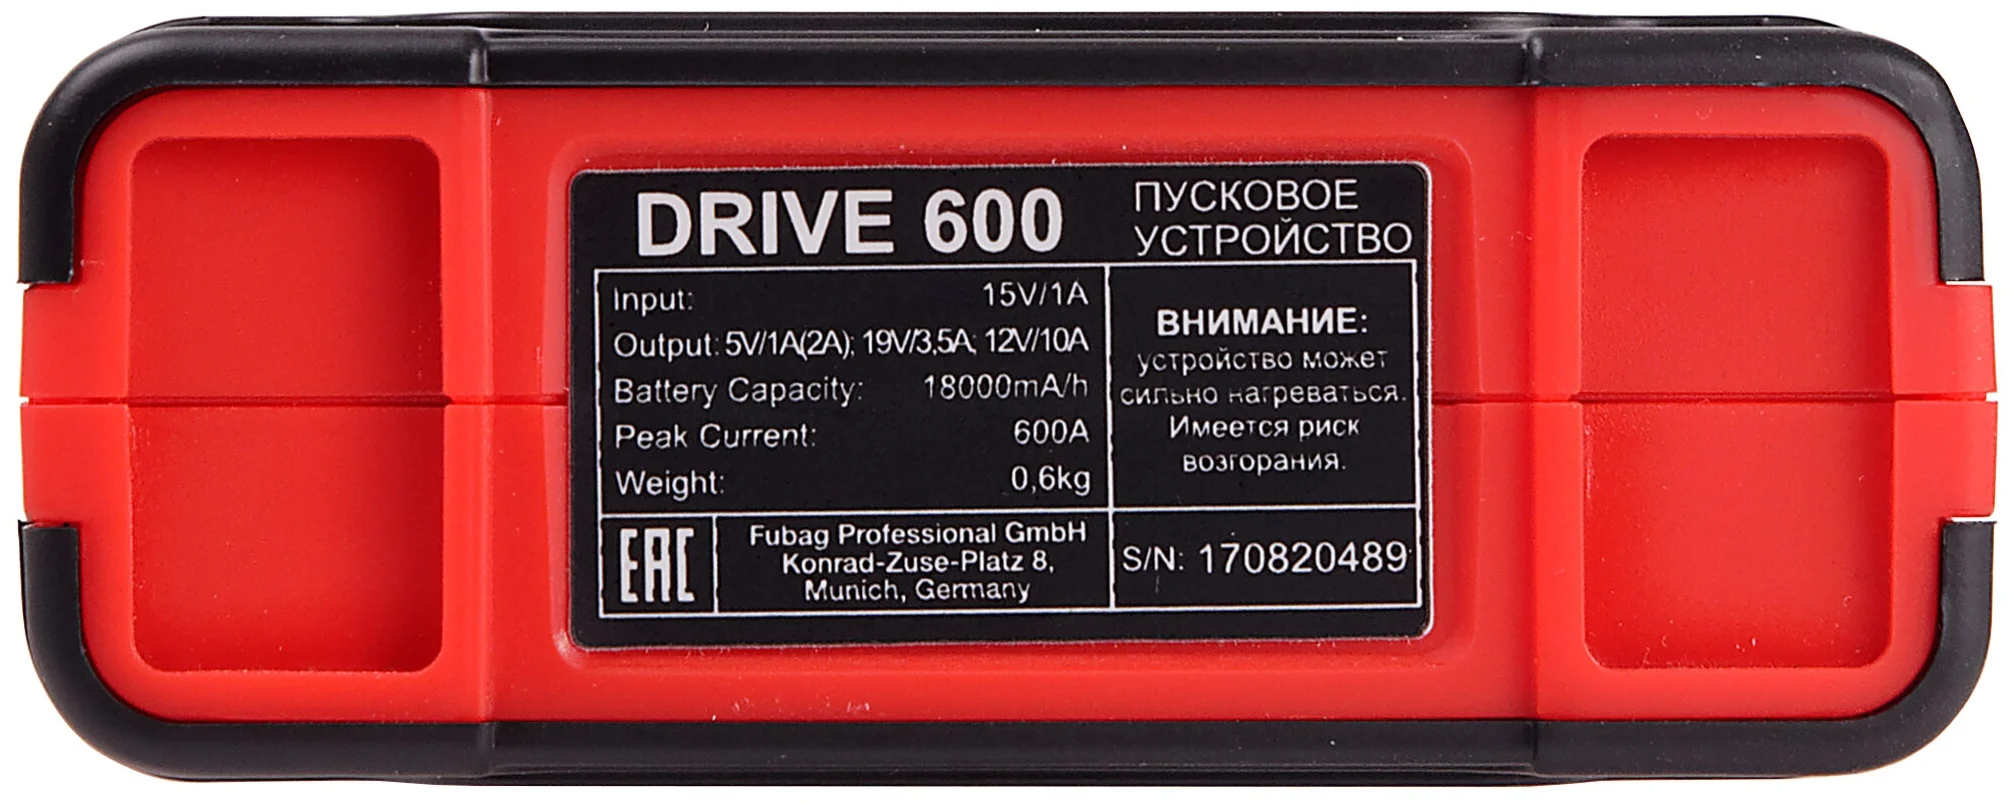 Fubag Drive 600 - емкость встроенного аккумулятора 18000 мА·ч